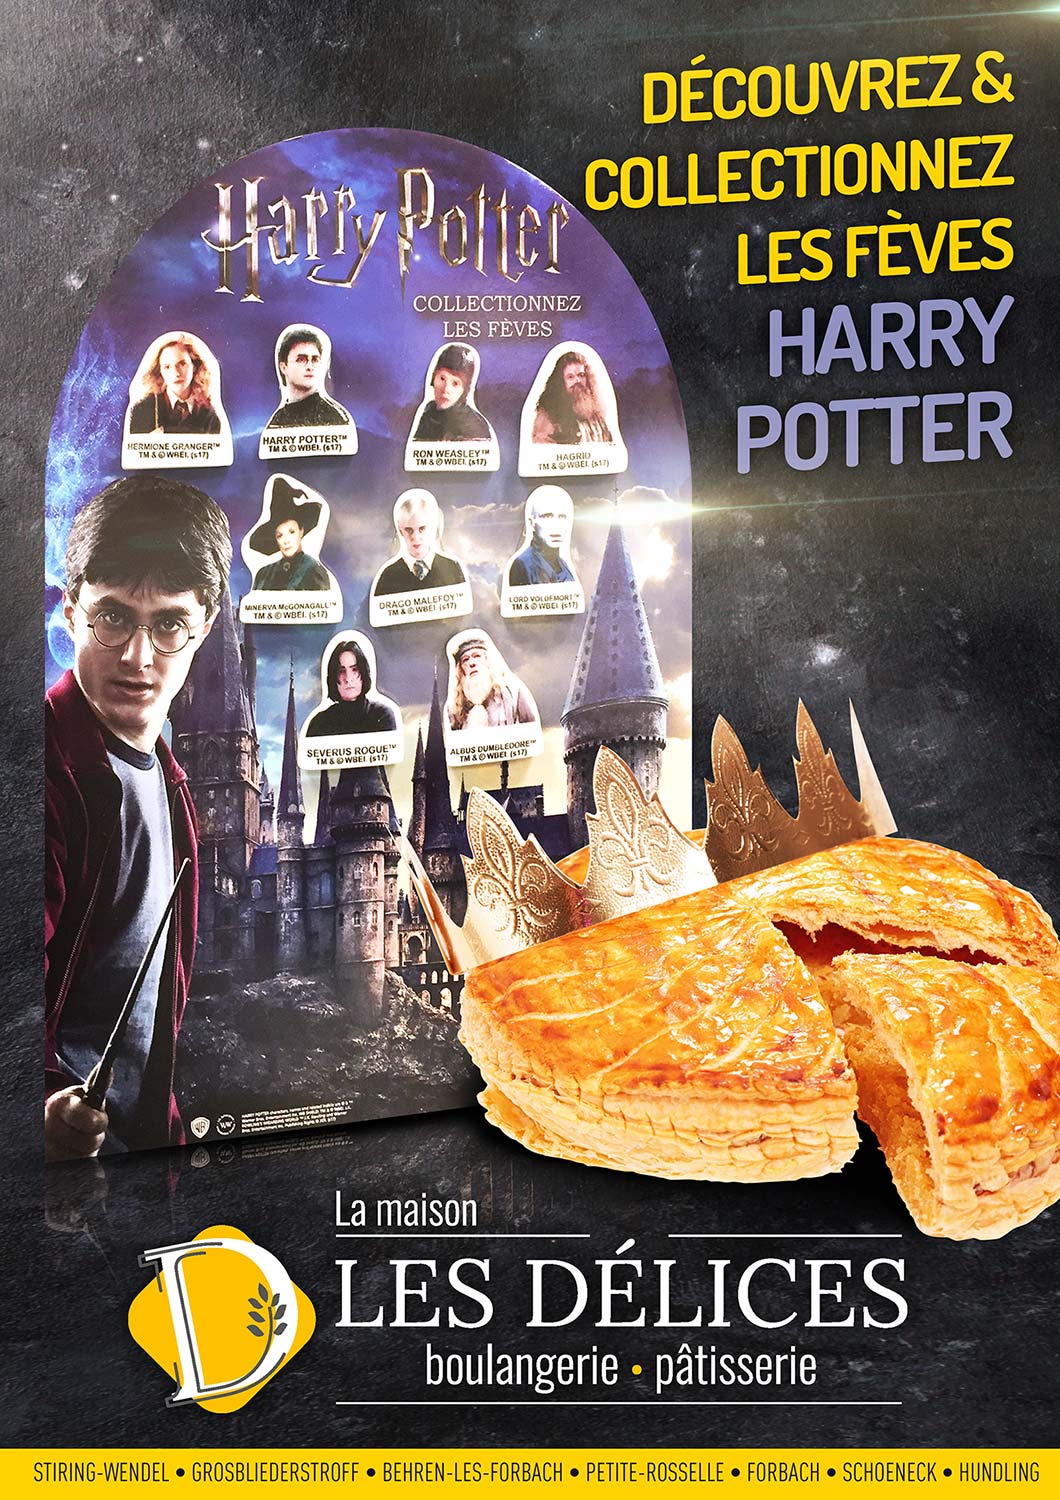 Une galette des Rois spéciale Harry Potter, disponible dès à